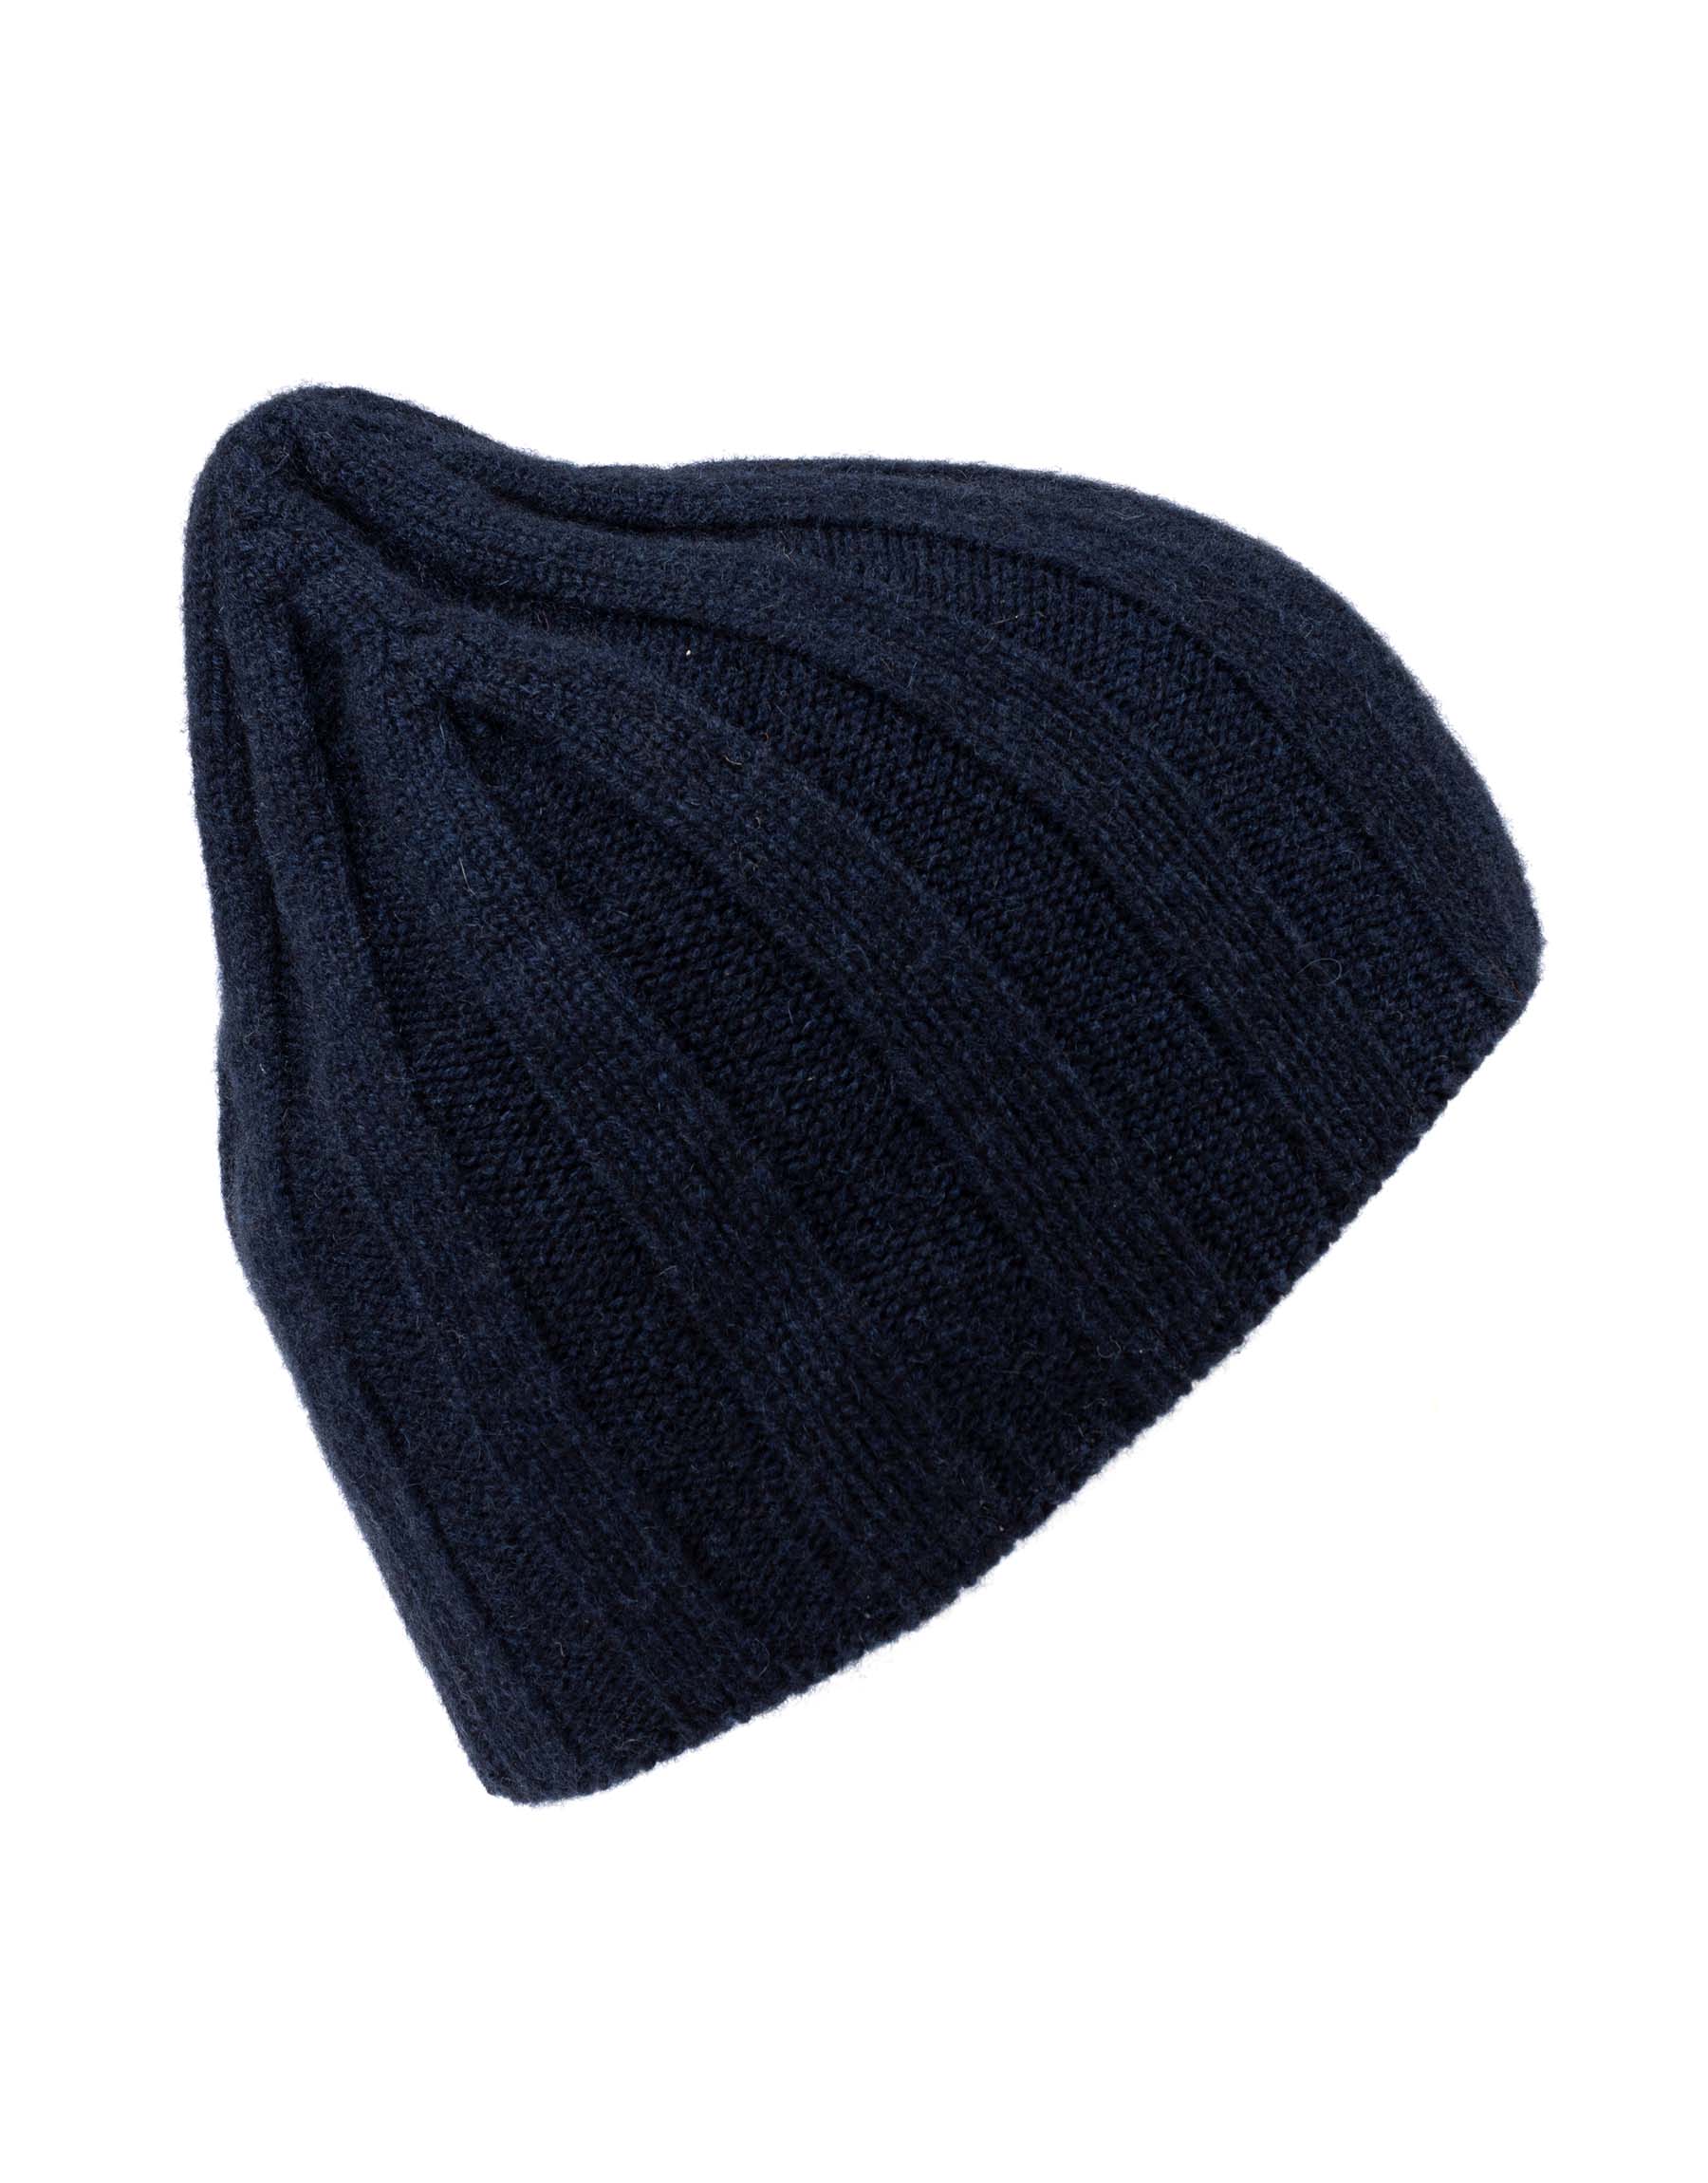 cappello-cuffia-uomo-dona-coste-cashmere-enea-maglieria-blu-navy